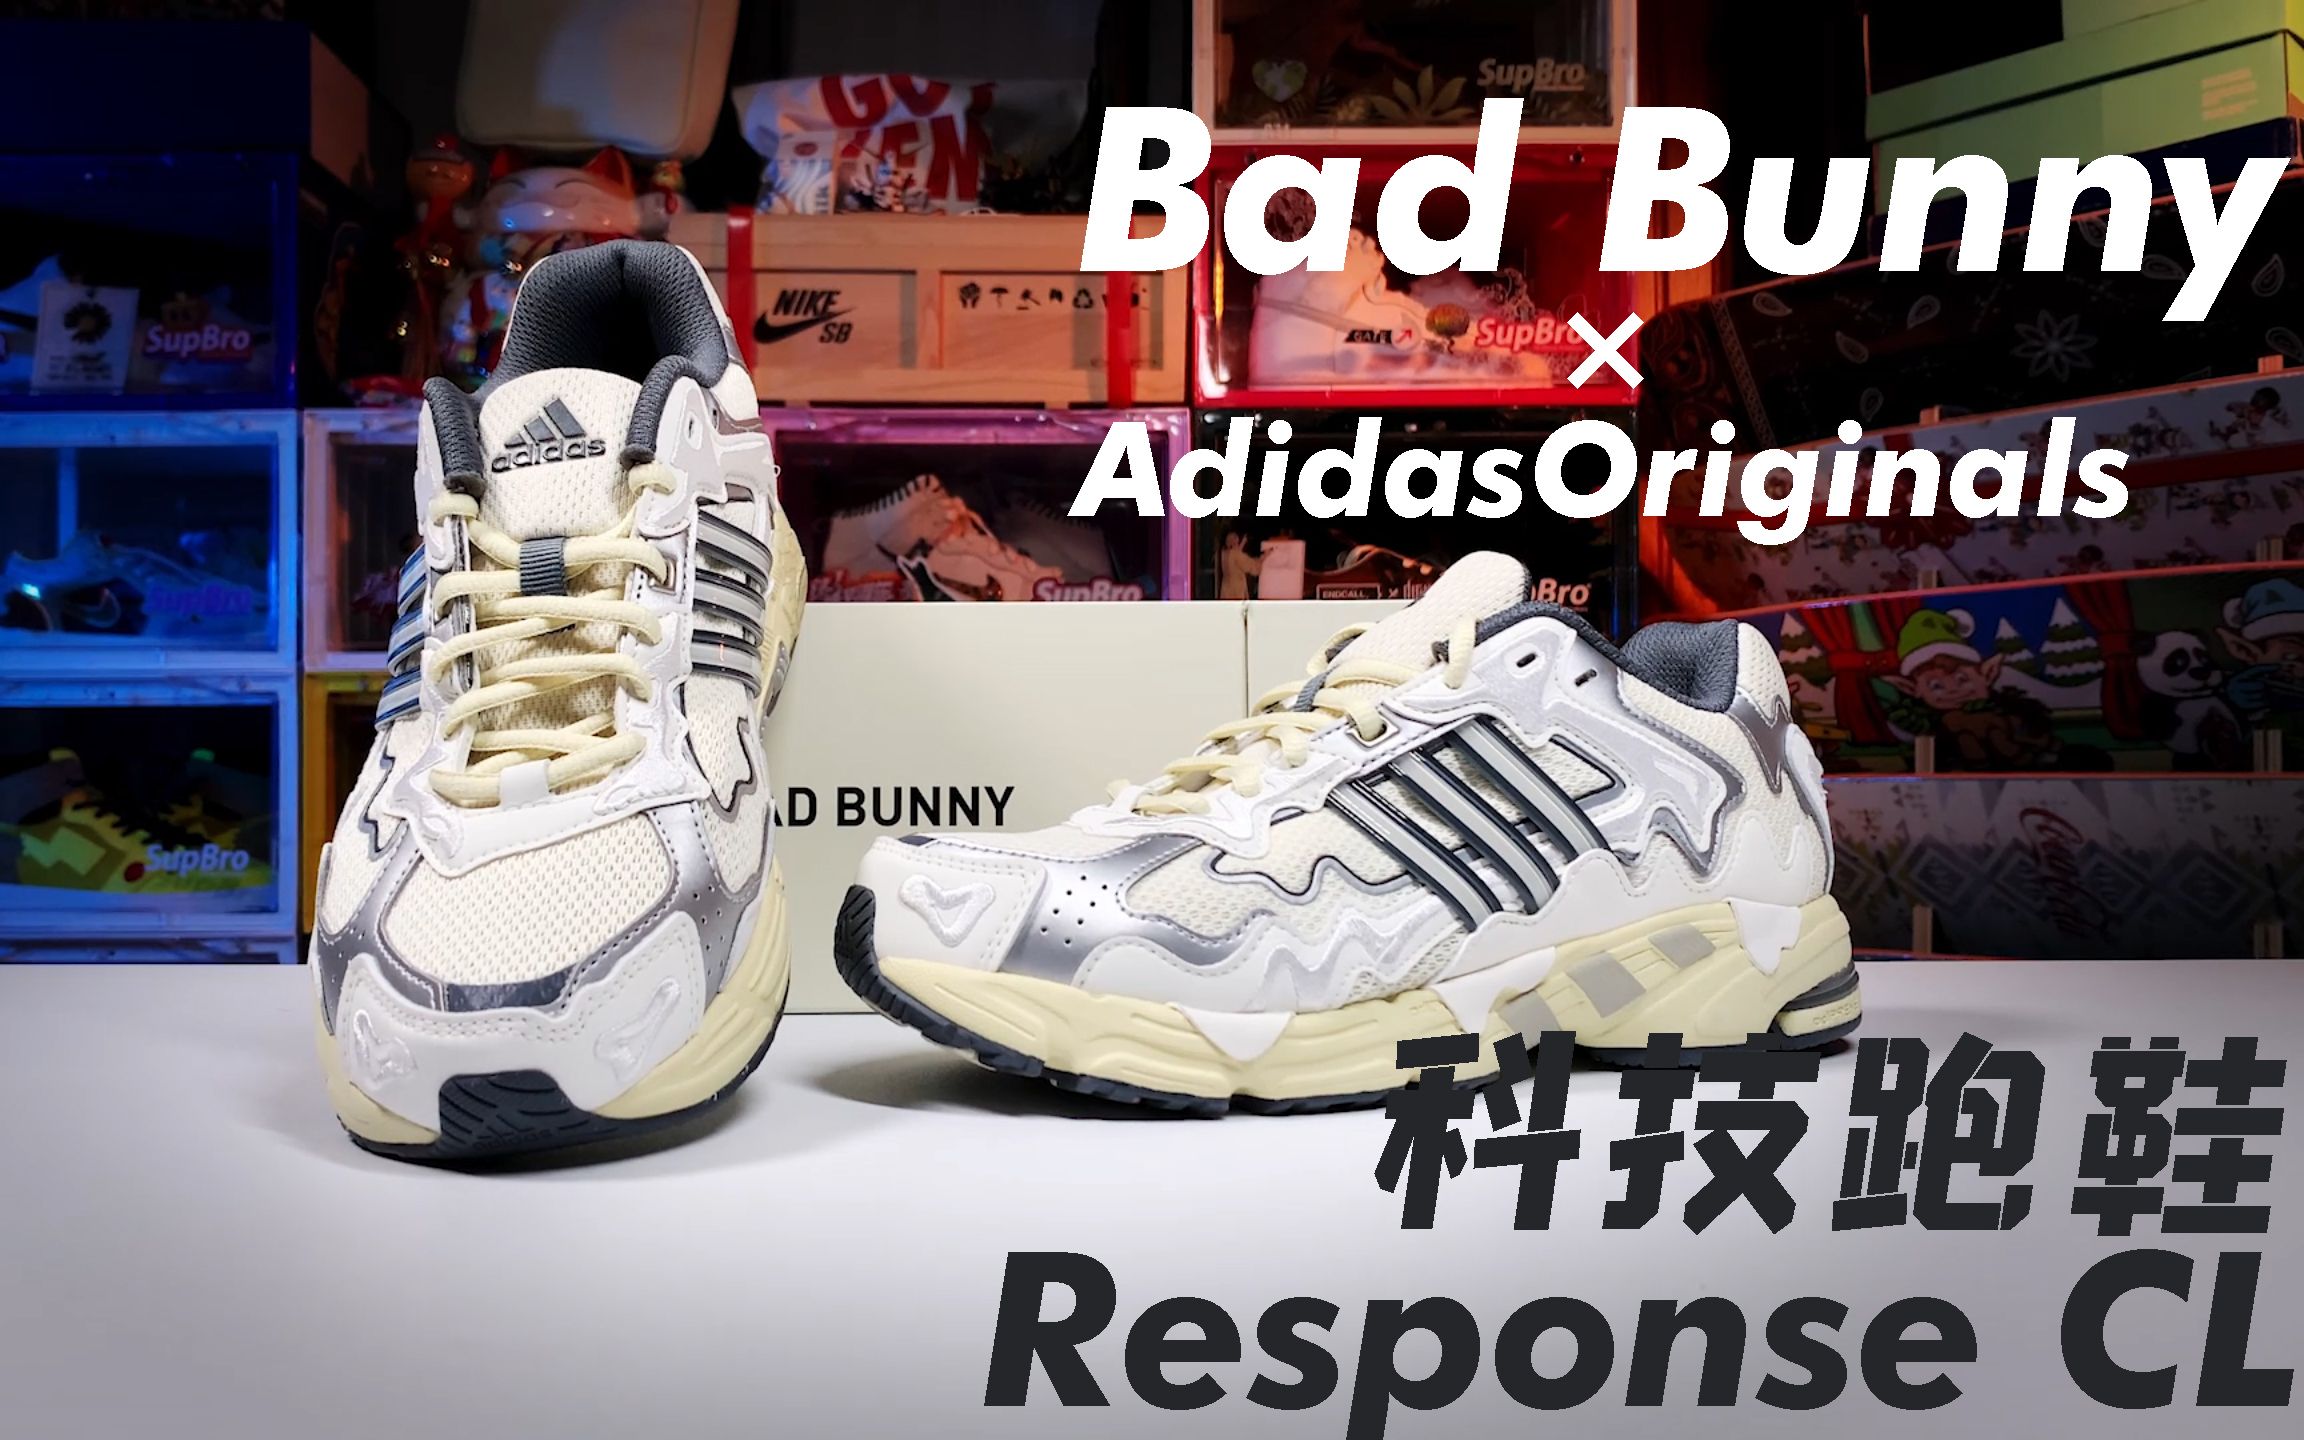 谁能拒绝集科技、颜值于一身的复古跑鞋呢？Bad Bunny联名adidasoriginals Response CL